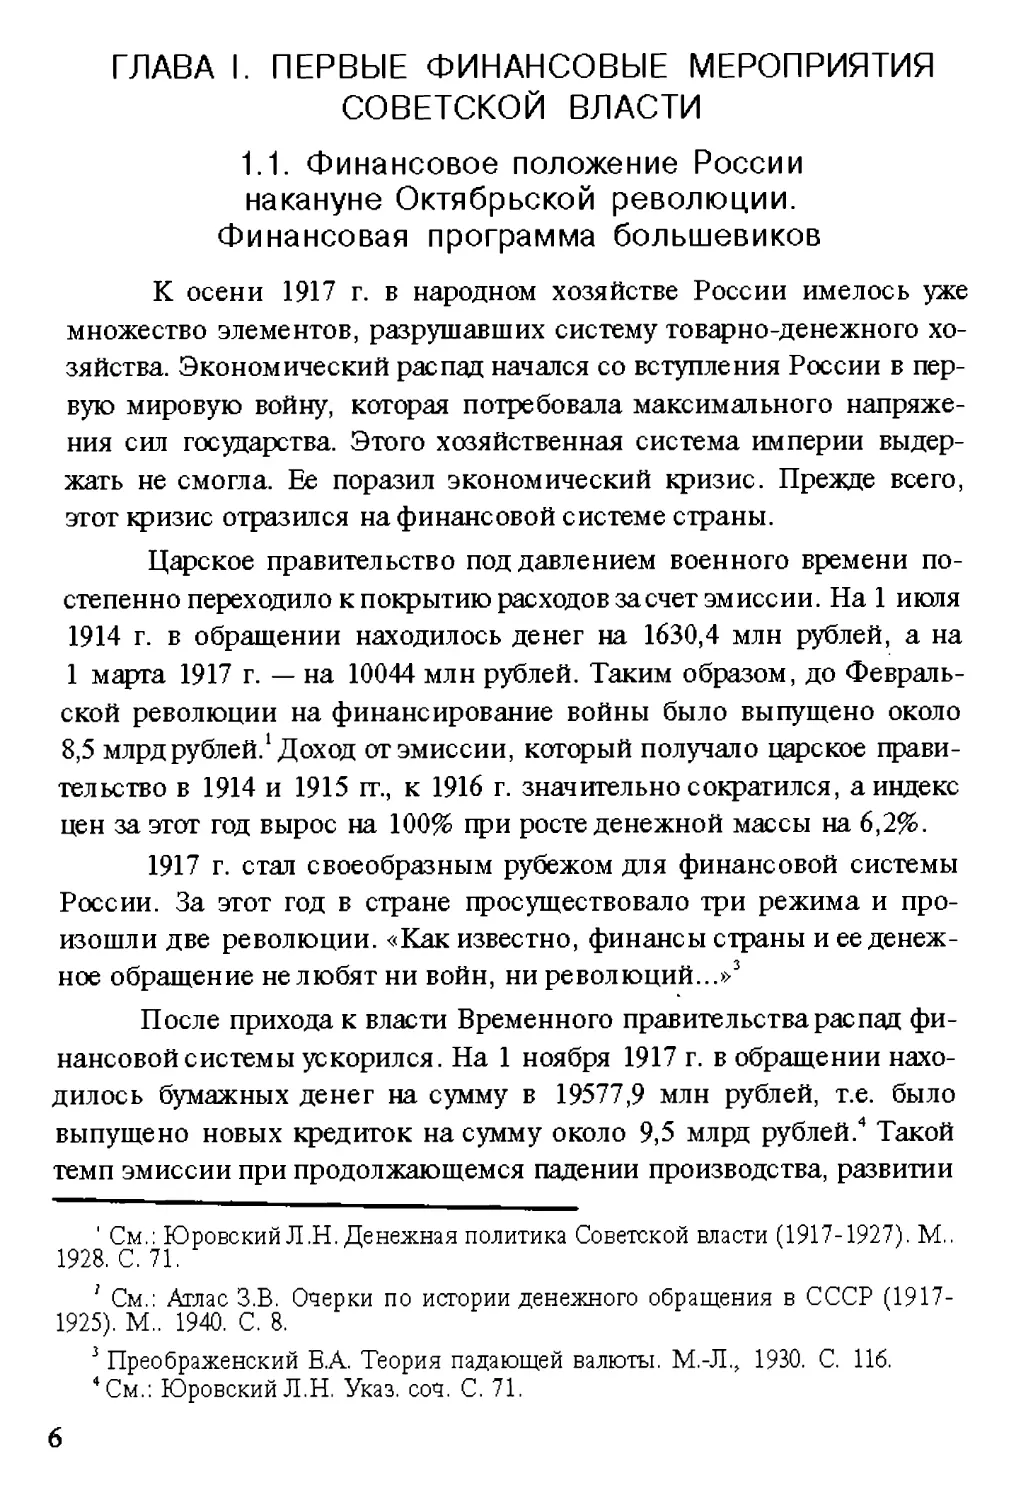 Глава I. Первые финансовые мероприятия Советской власти